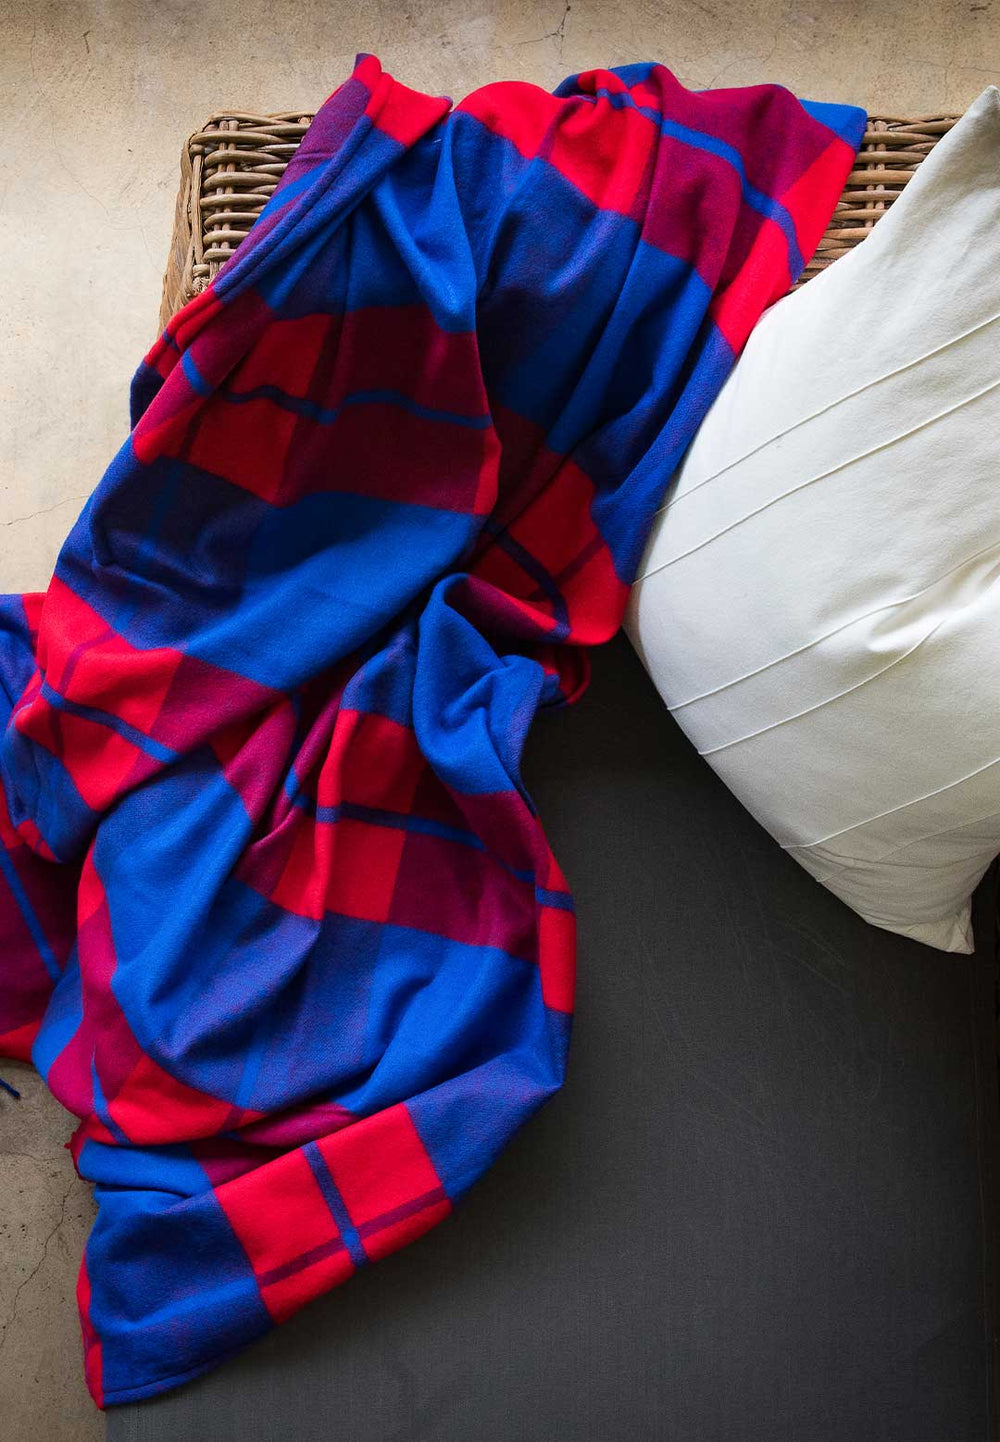 WOOL-LIKE Super Acrylic Shuka-African blanket- Masai/Maasai shuka